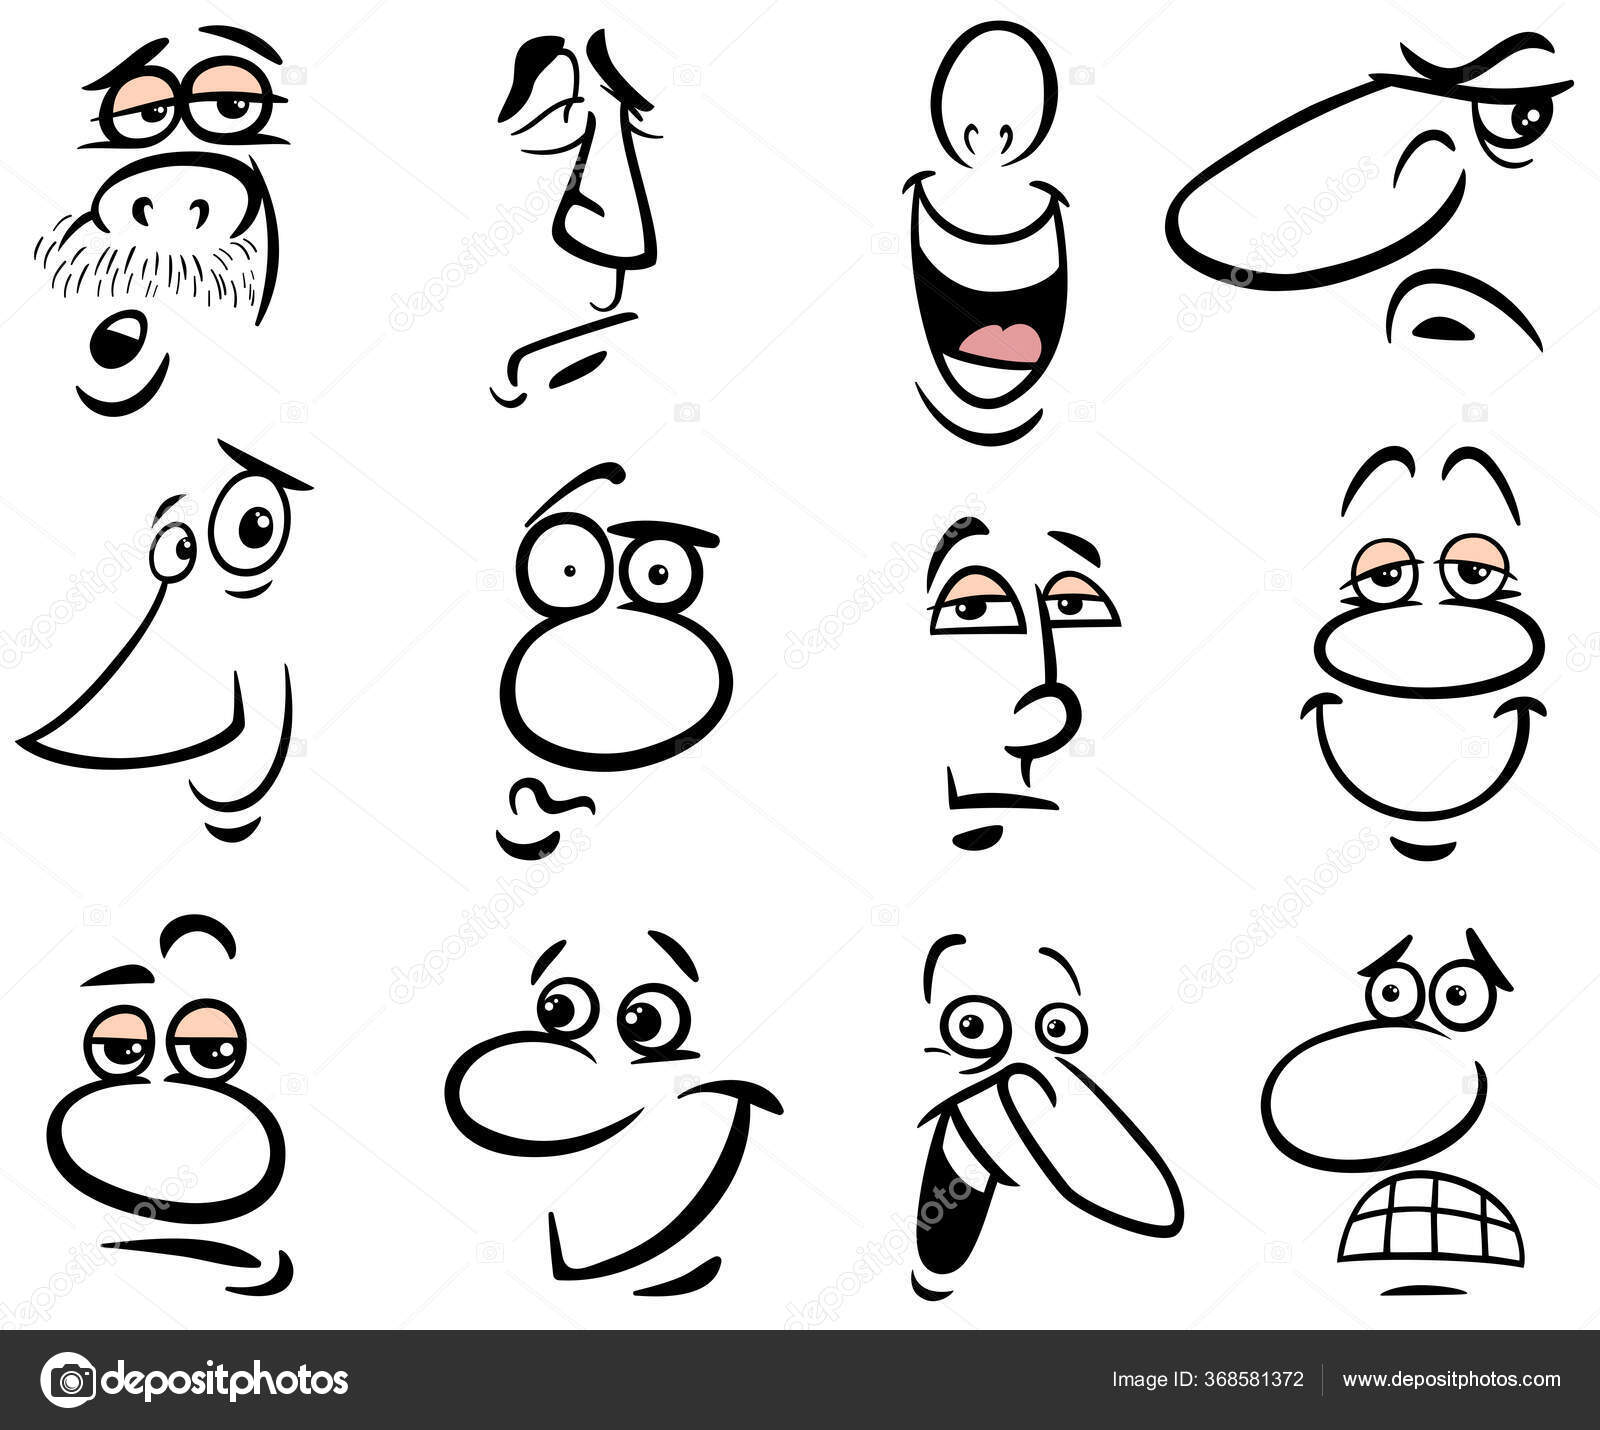 Desenho de rostos humanos com emoções felizes